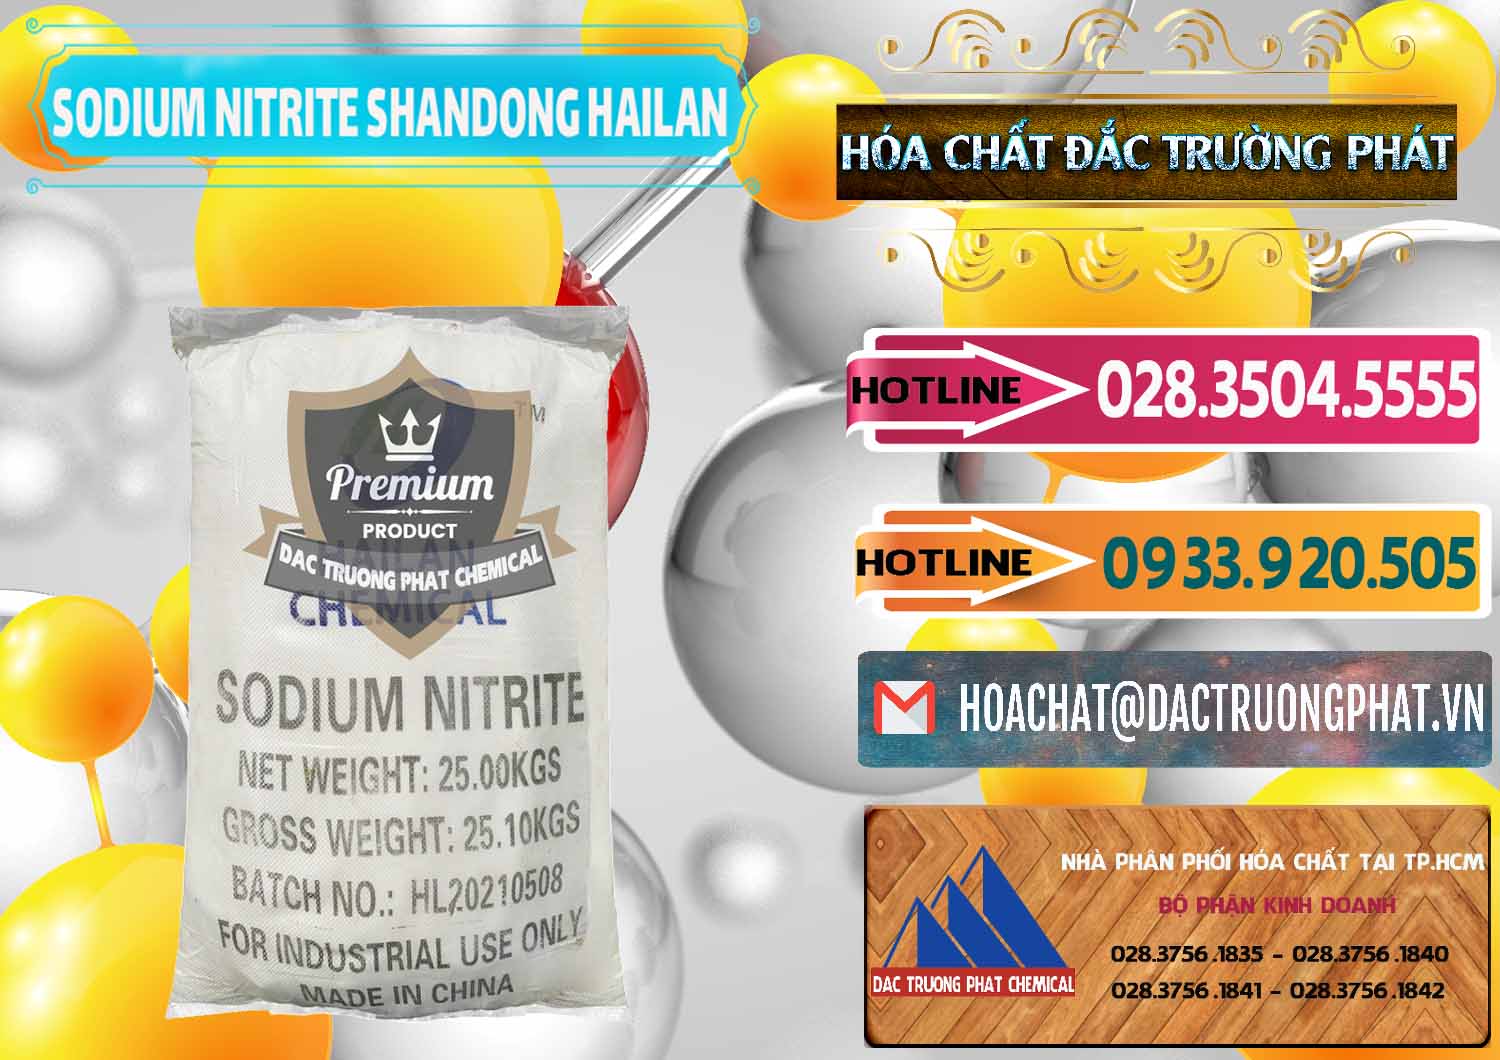 Nơi nhập khẩu và bán Sodium Nitrite - NANO2 99.3% Shandong Hailan Trung Quốc China - 0284 - Cty chuyên bán và phân phối hóa chất tại TP.HCM - dactruongphat.vn